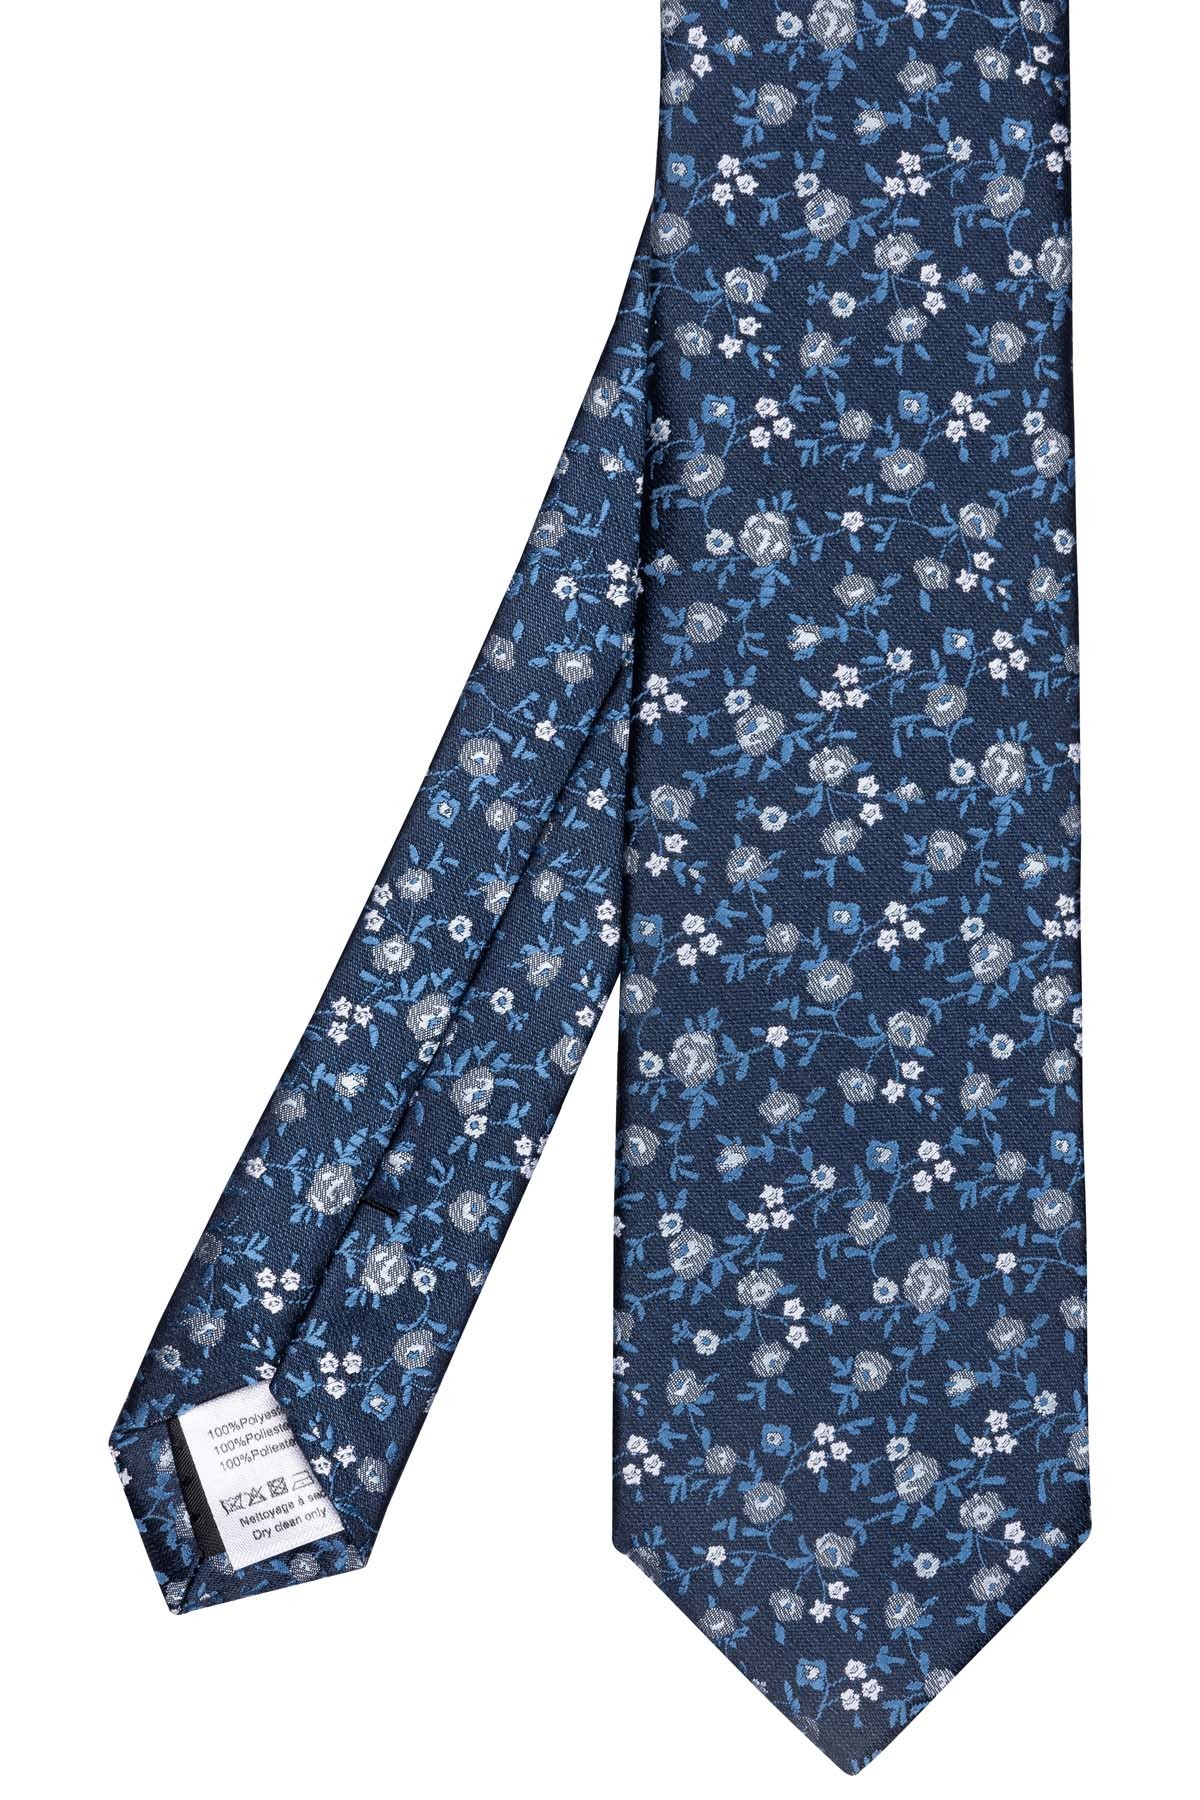 cravate marine motifs fleuris bleu ciel gris et blanc